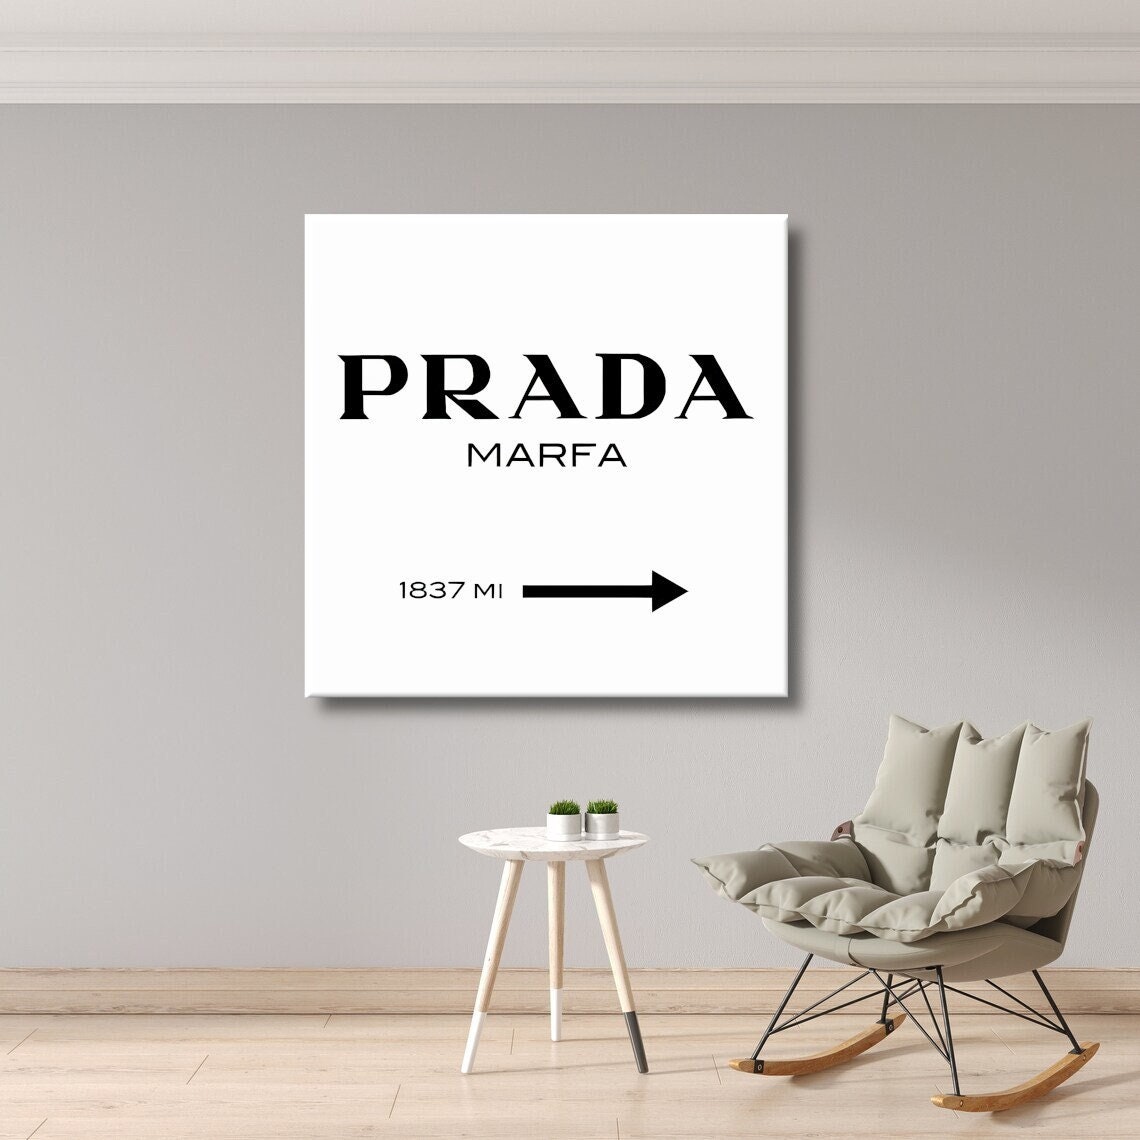 Prada Marfa ❤️ tableau noire et blanche impression sur toile pro4